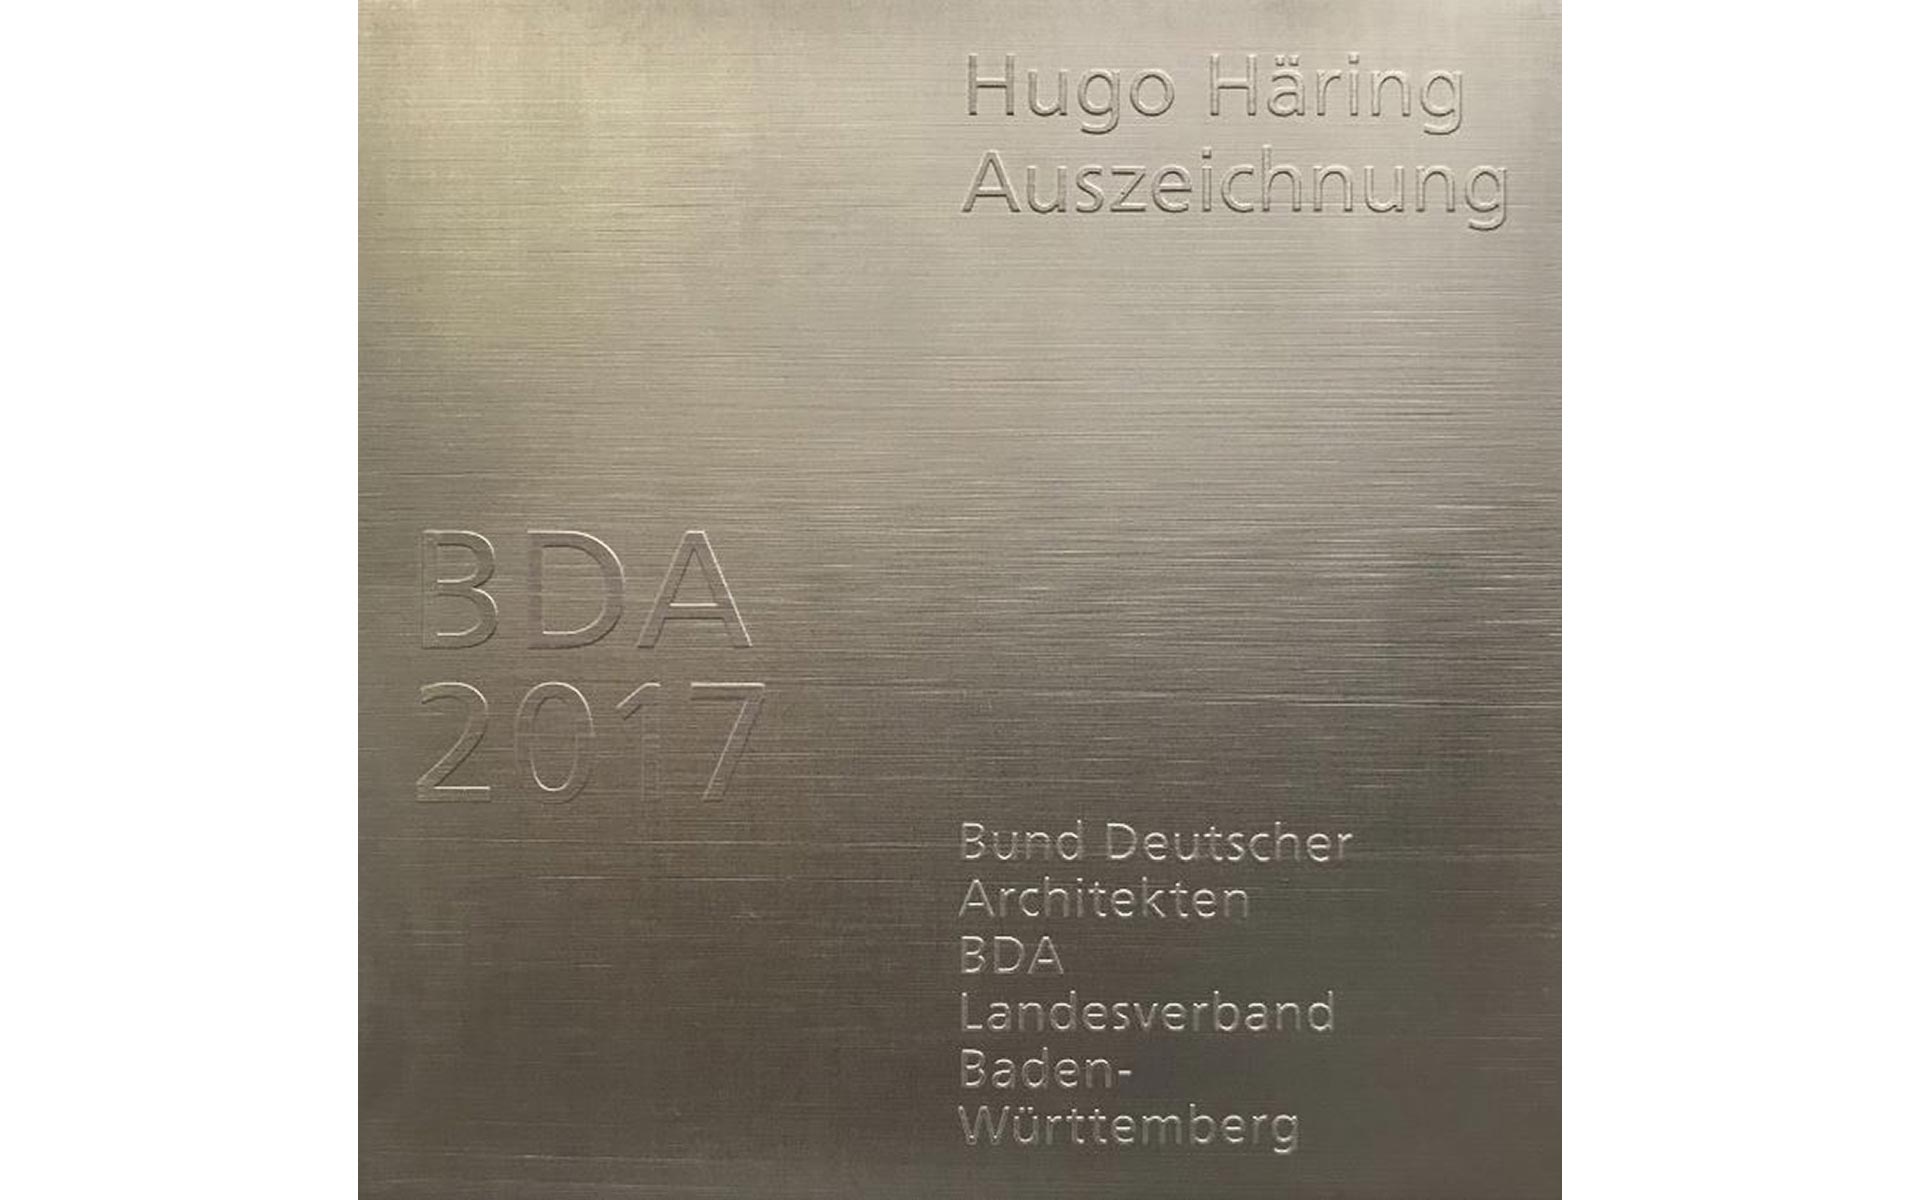 Hugo Häring Auszeichnung 2017